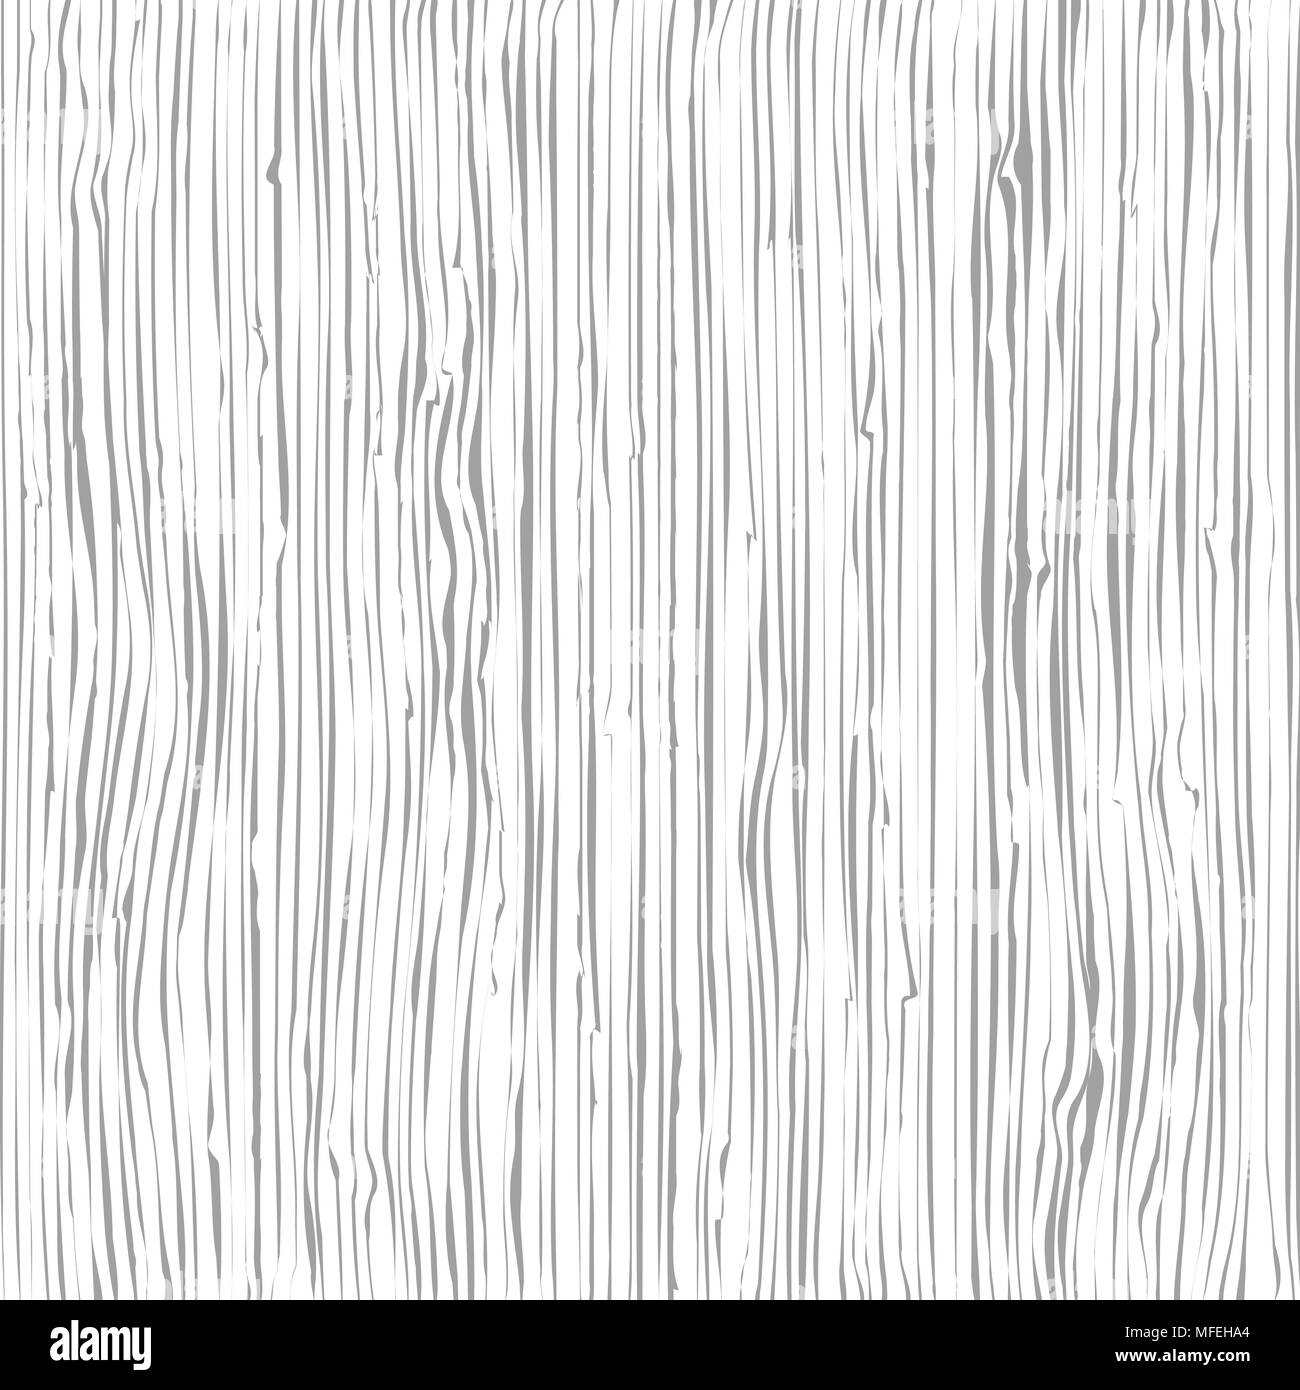 Holz Maserung. Holz Textur. Fasern Struktur Hintergrund, Vector Illustration Stock Vektor